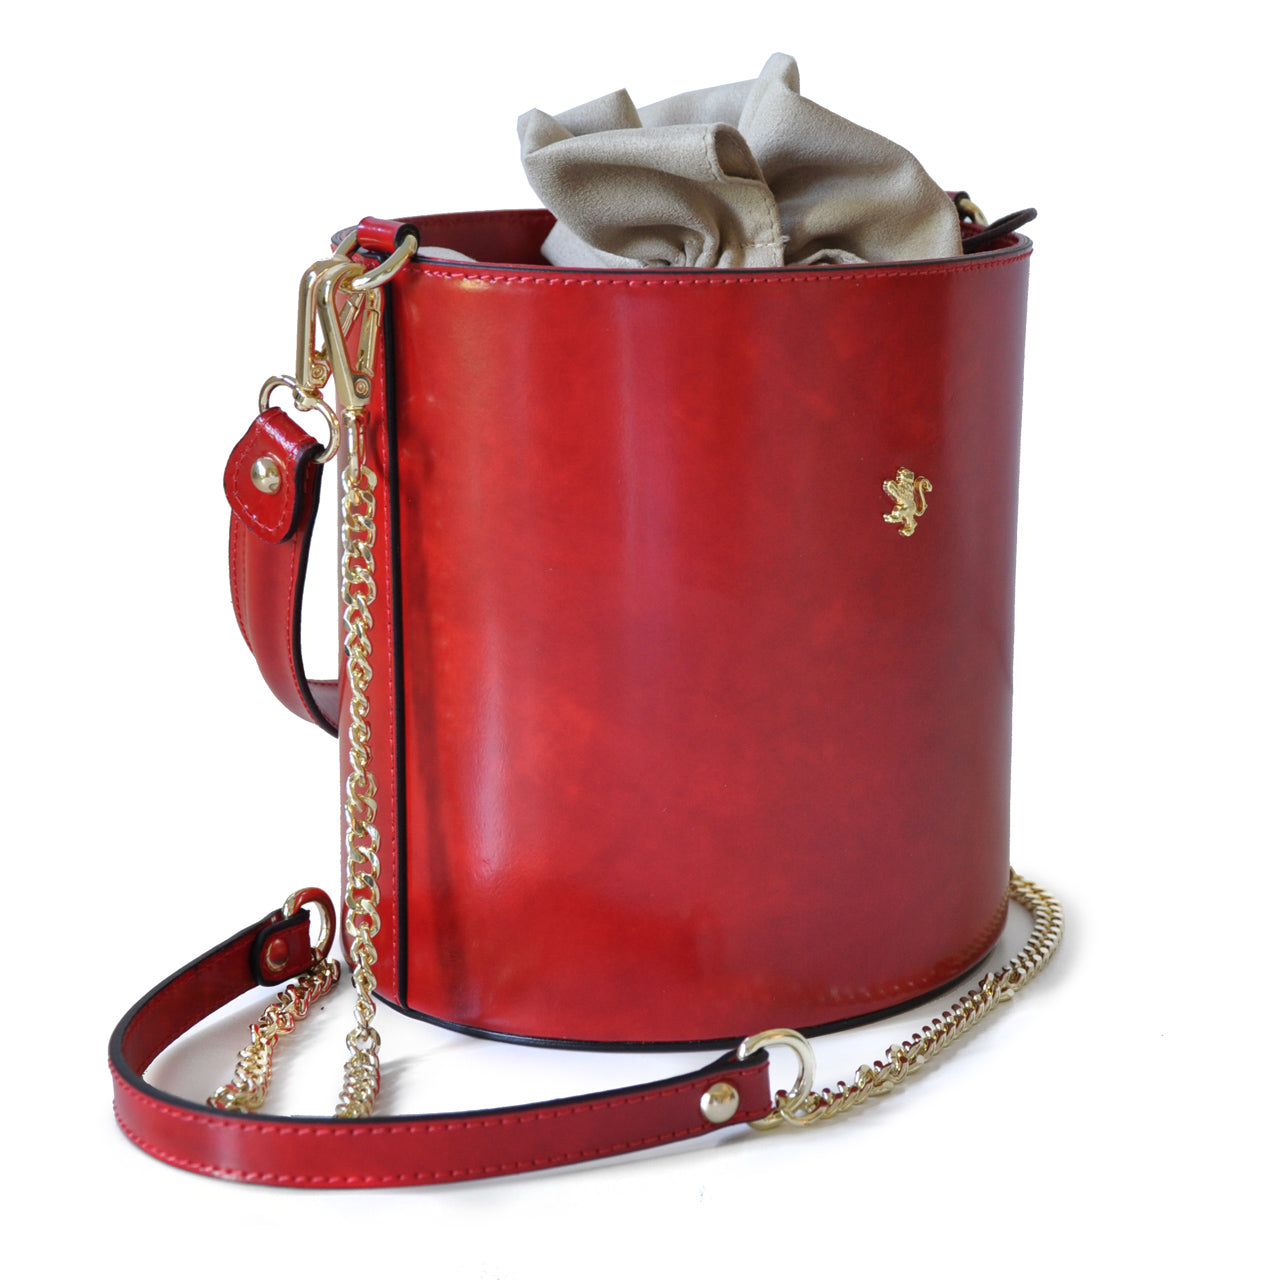 Pratesi Bag Secchiello R335 in genuine Italian leather - Brunelleschi Leather Pink